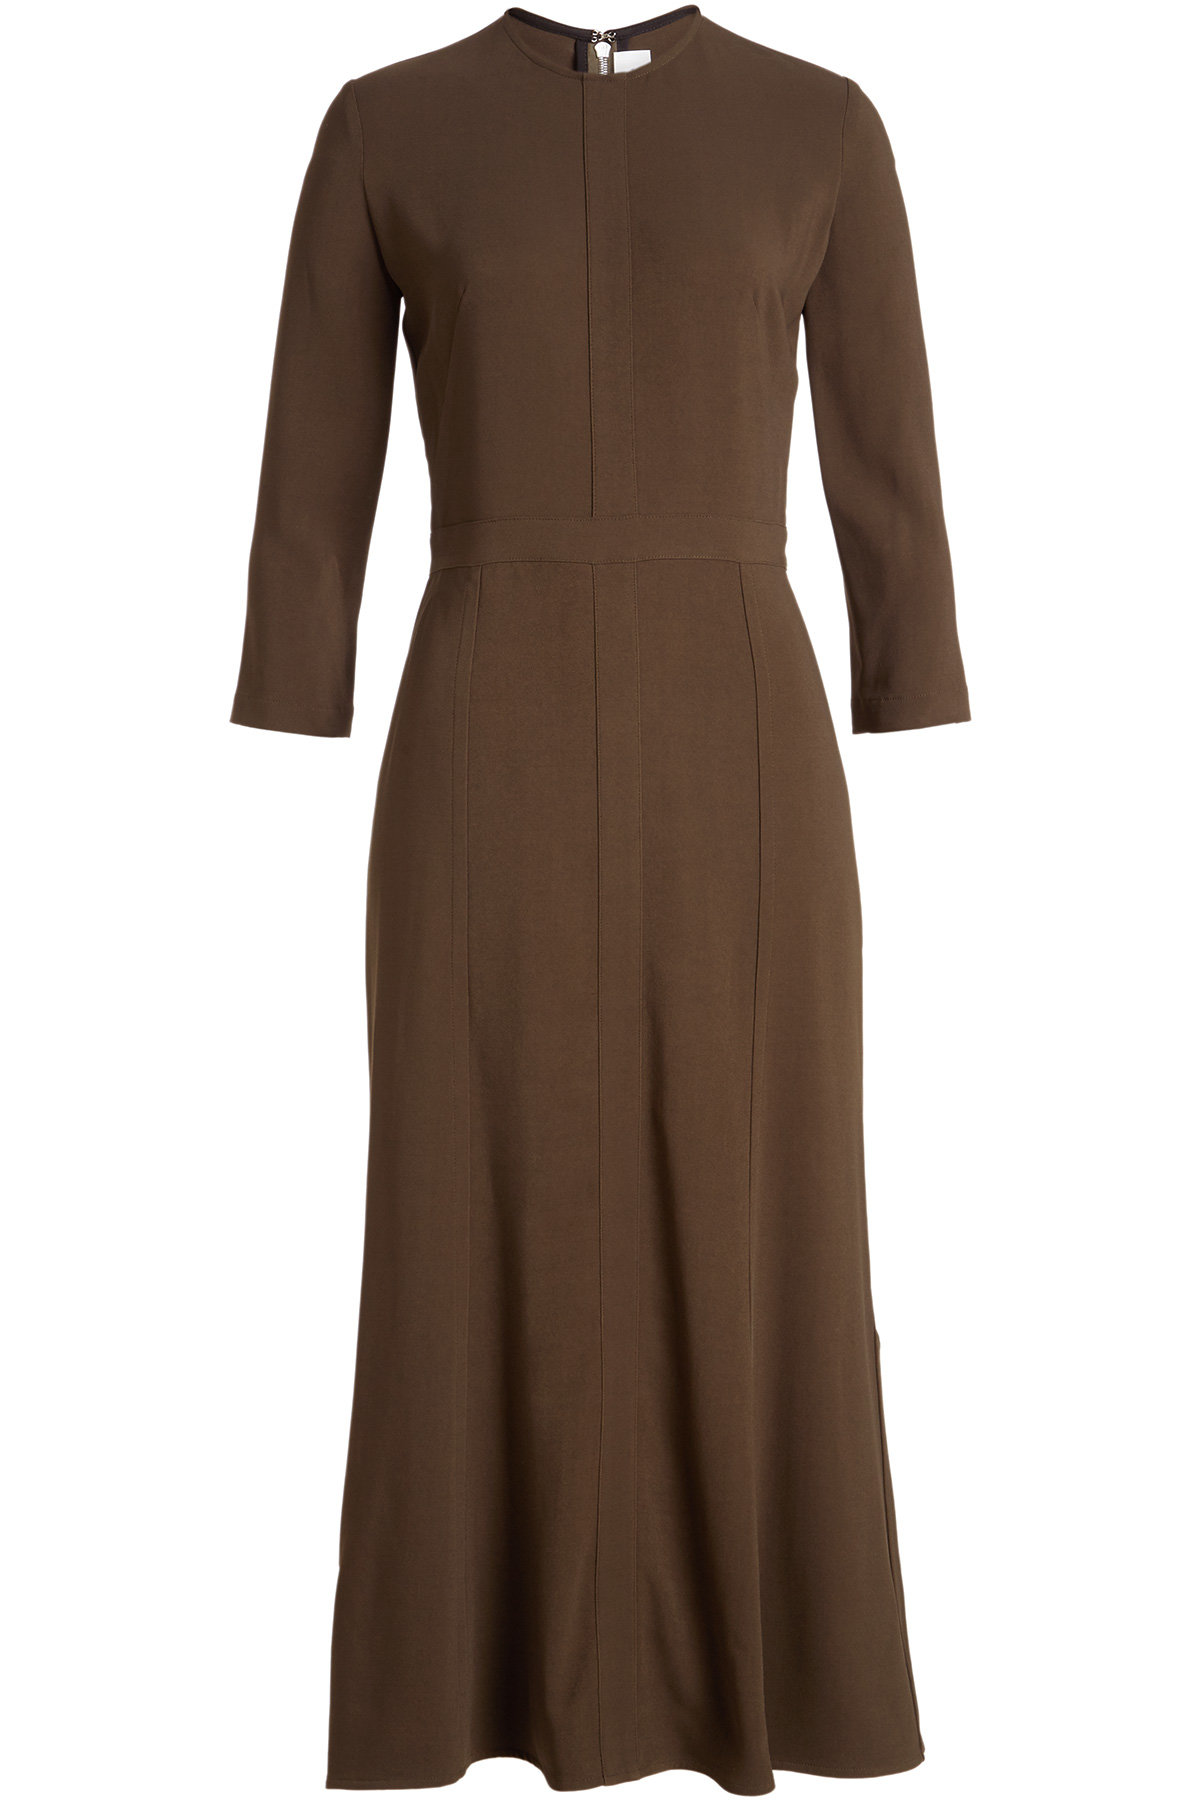 Victoria Beckham - Panelled Dress